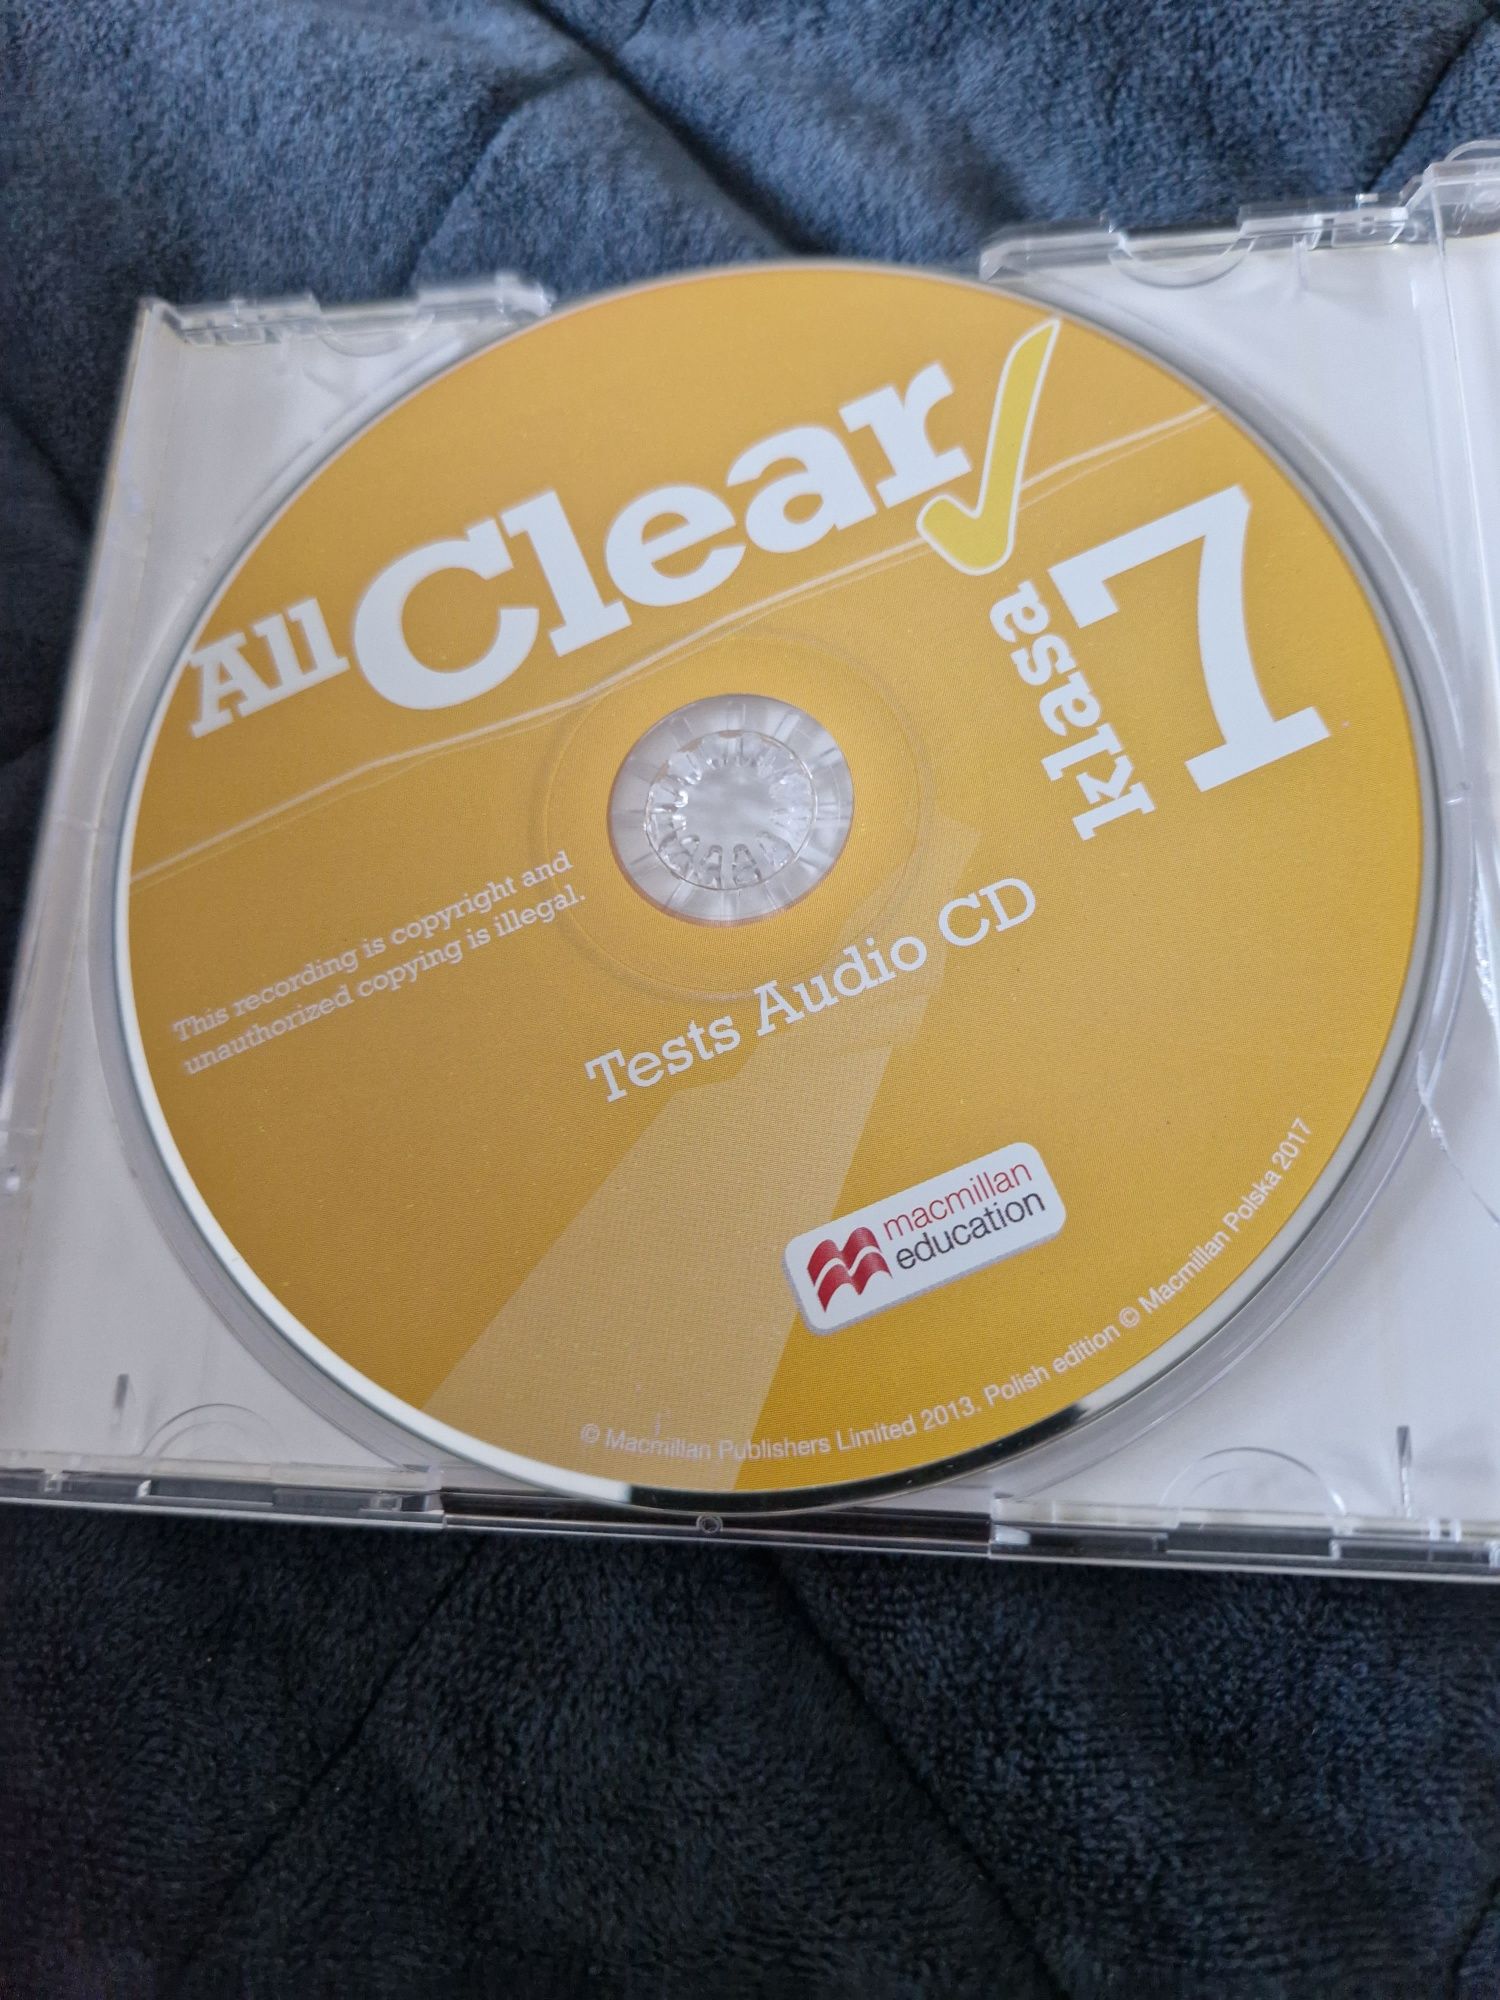 Sprzedam płytę all clear klasa 7 tests audio cd